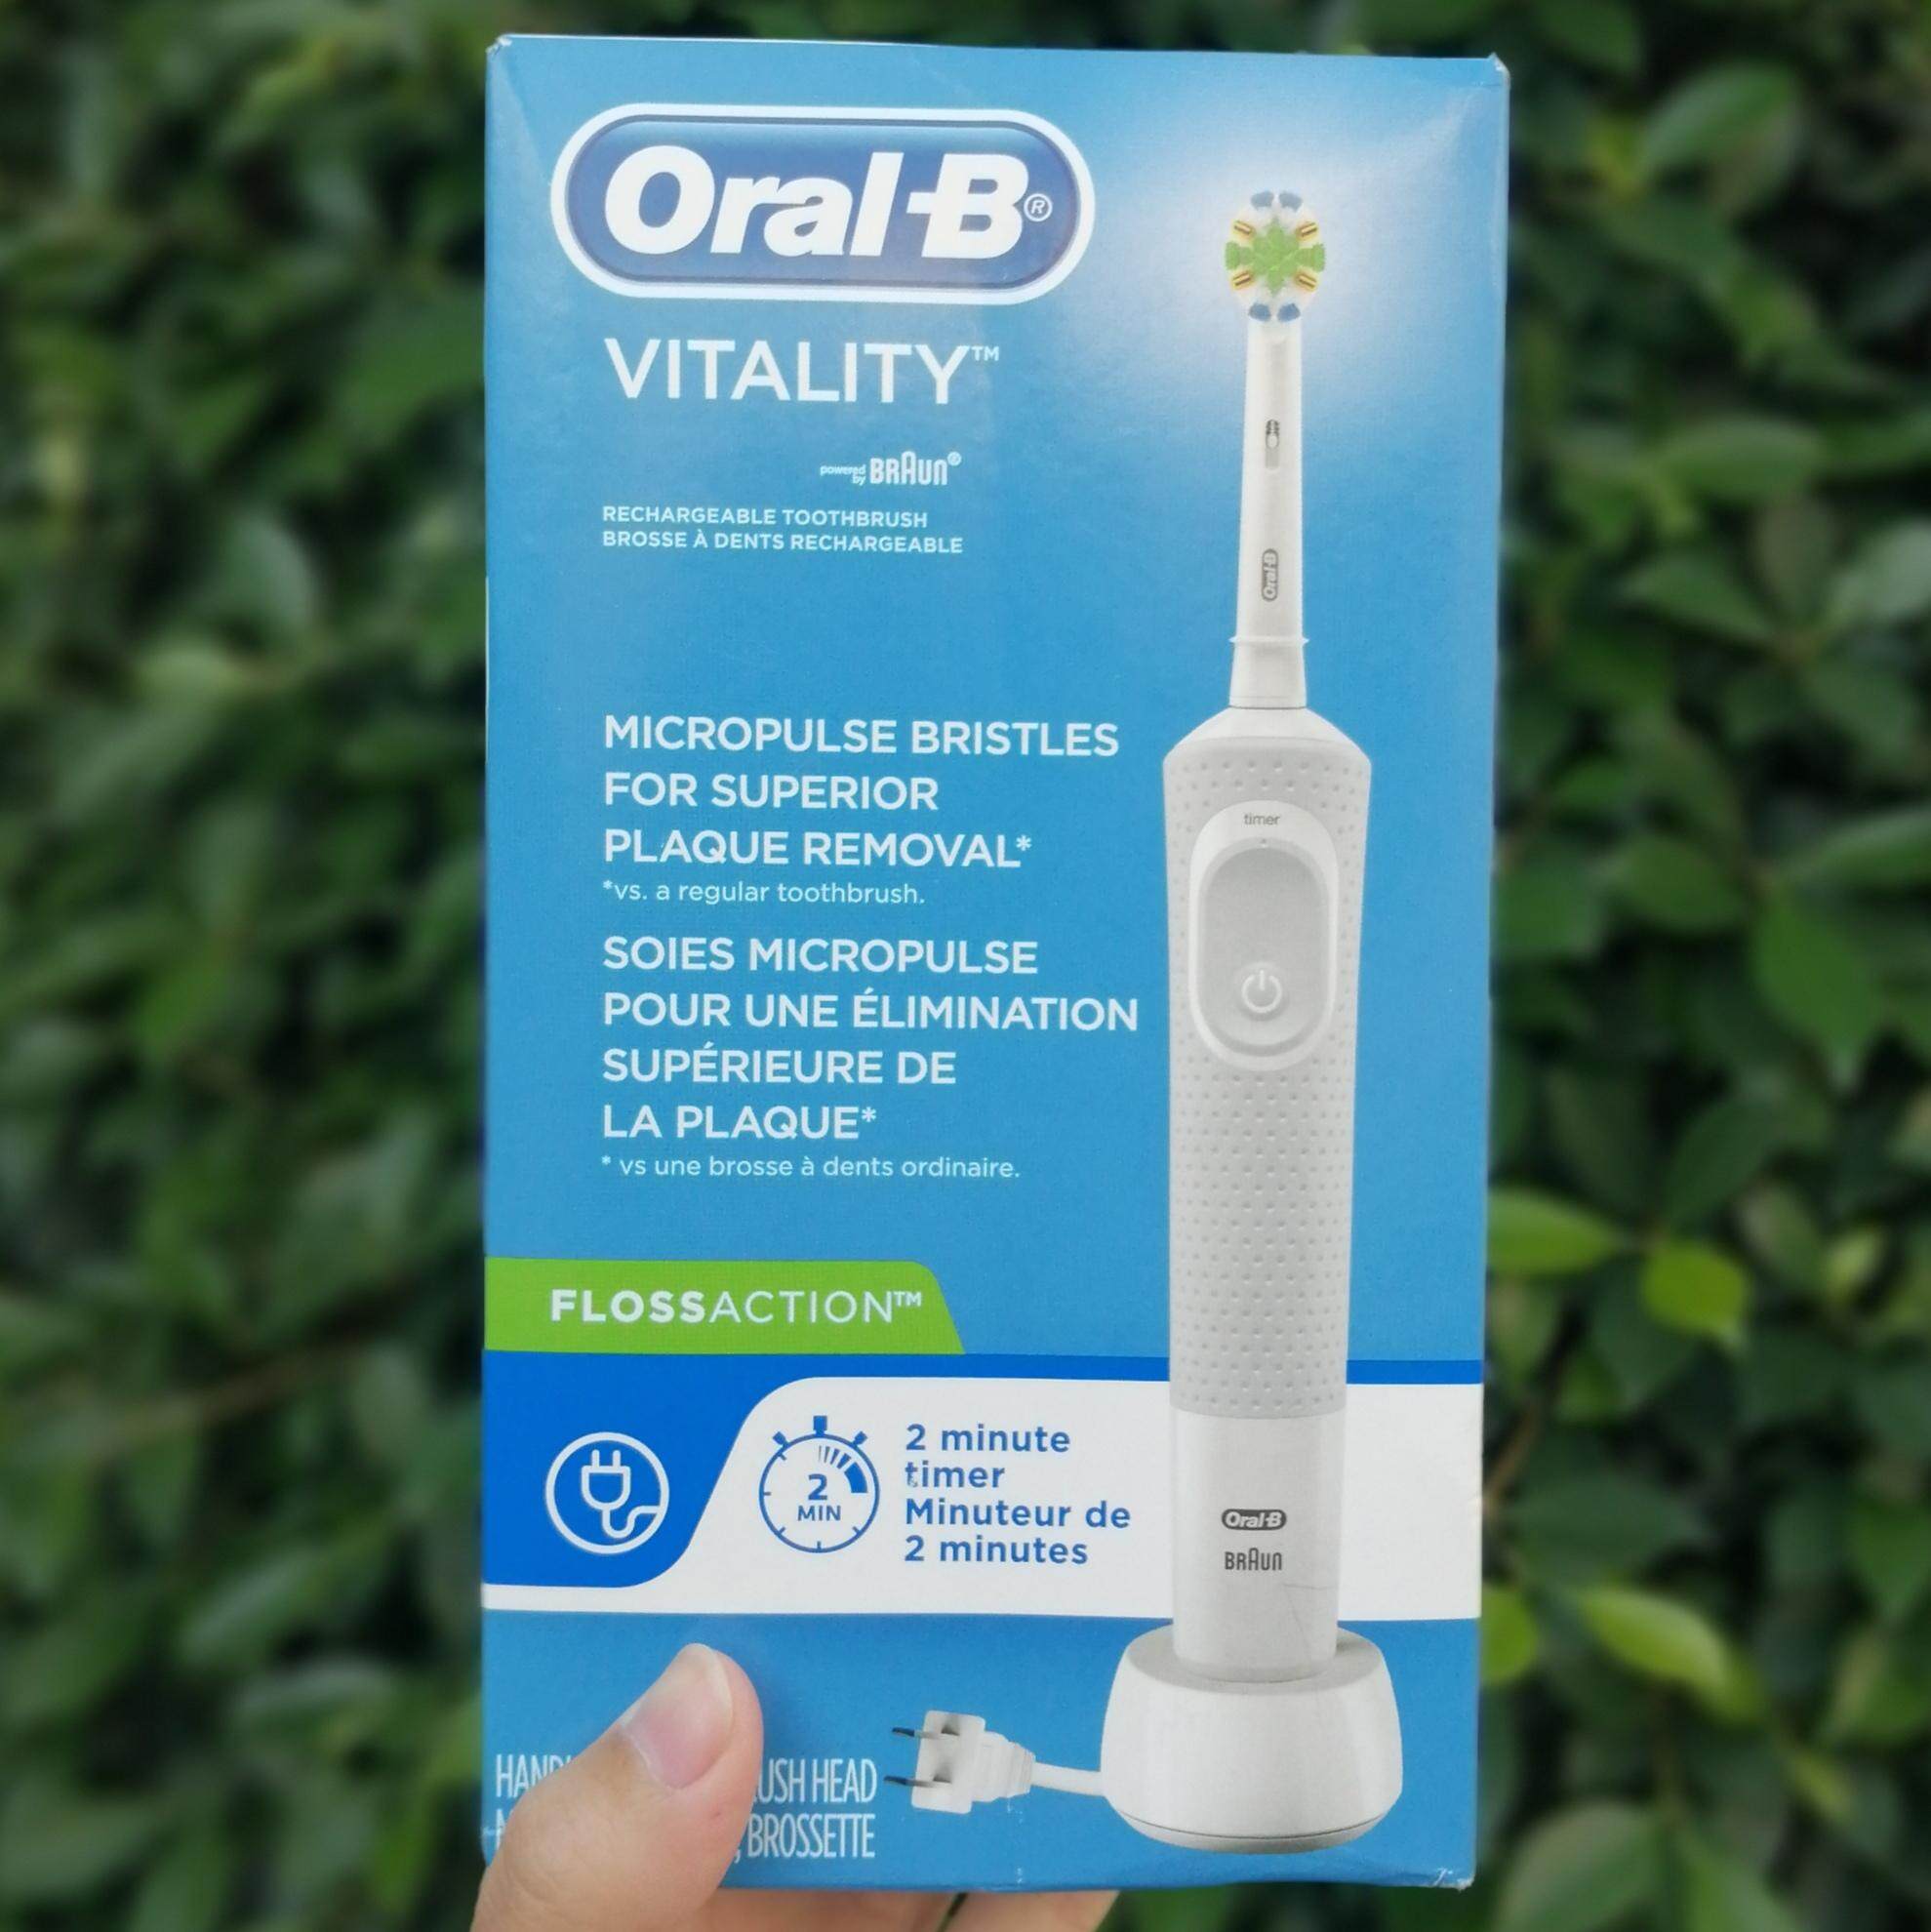 แปรงสีฟันไฟฟ้า ทำความสะอาดทุกซี่ฟันอย่างหมดจด นครนายก ออรัลบี แปรงสีฟันไฟฟ้าแบบชาร์จไฟได้ Oral B® Electric Rechargeable Toothbrush รุ่น Vitality™ FlossAction™ Powered by BRAUN® สีขาว พร้อมตัวจับเวลาอัตโนมัติ Oral B ออรัล บี